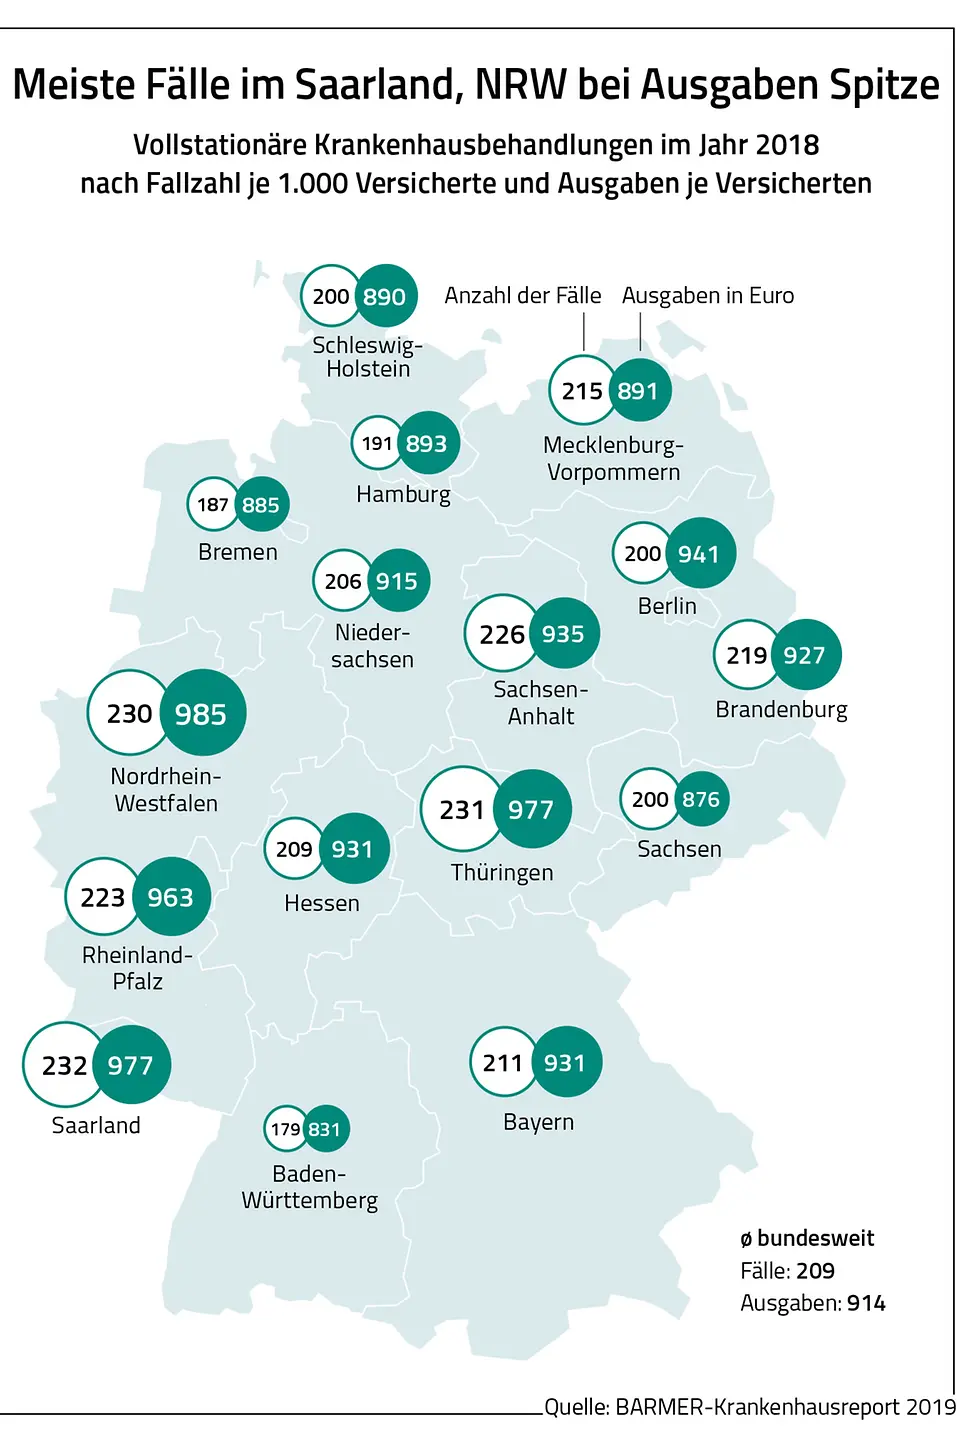 Die Grafik zeigt, dass die Ausgaben für vollstationäre Krankenhausbehandlungen in NRW am höchsten waren